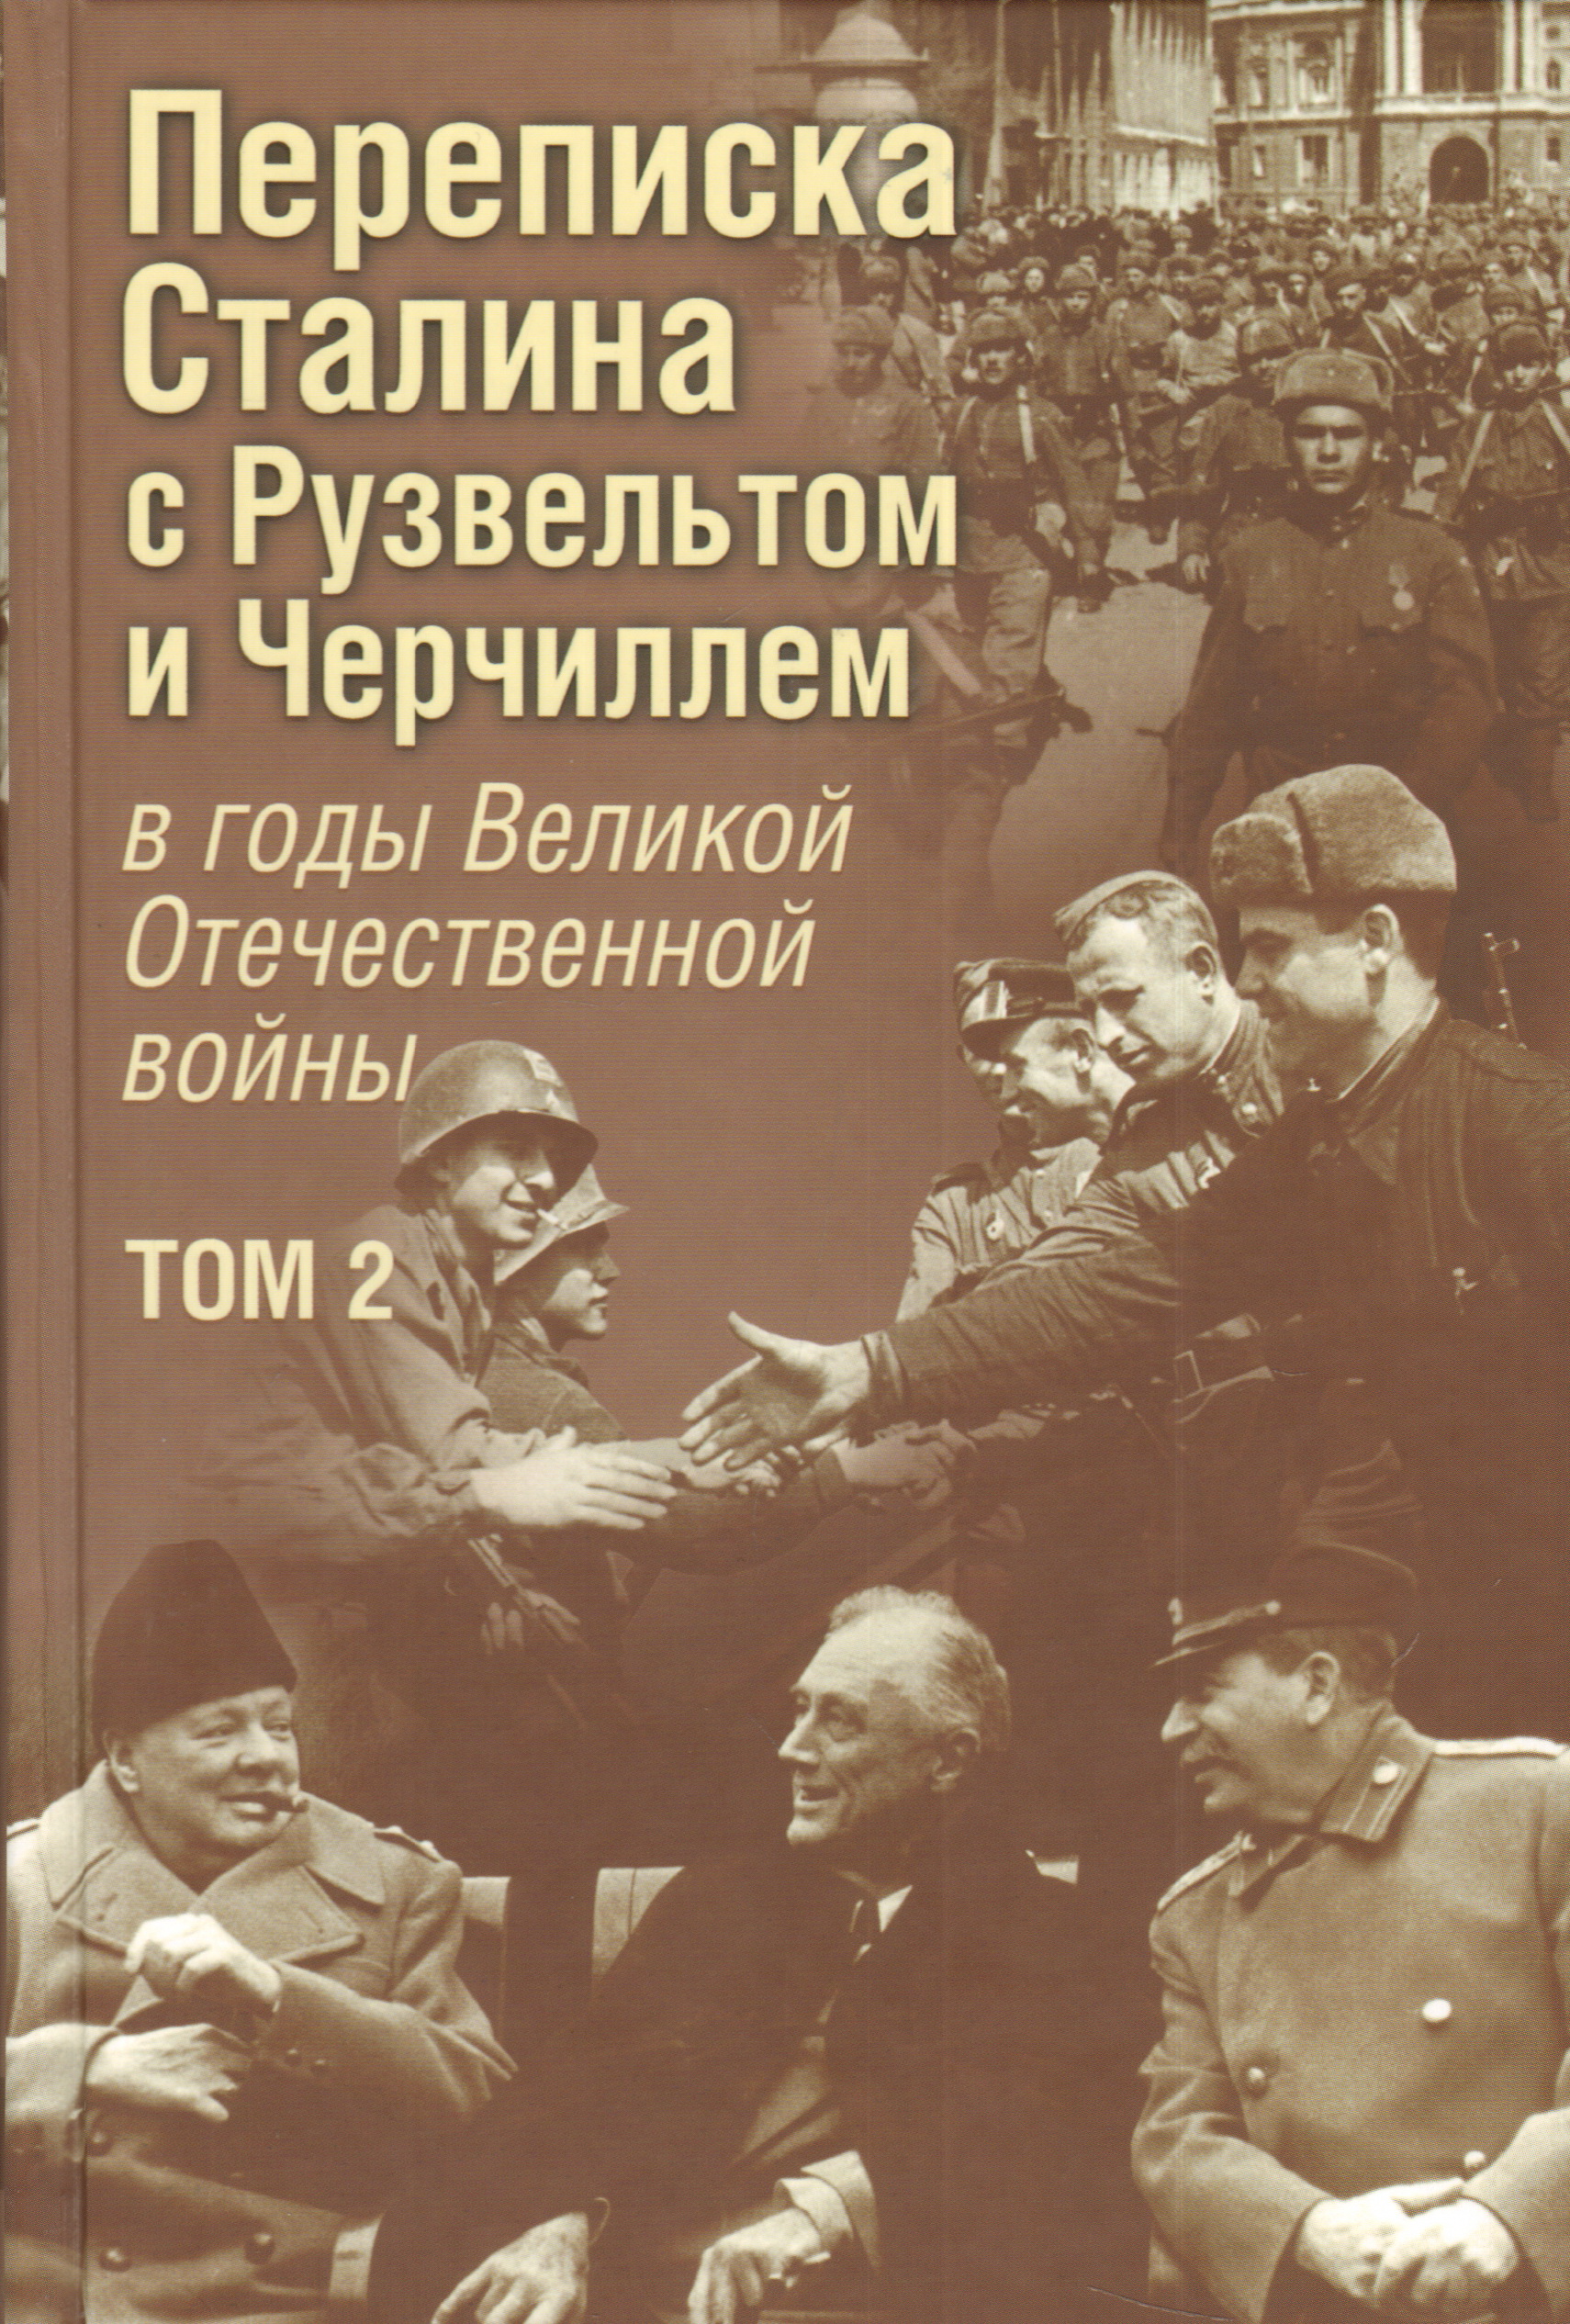 Переписка И. В. Сталина с Ф. Рузвельтом и У. Черчиллем, т.2